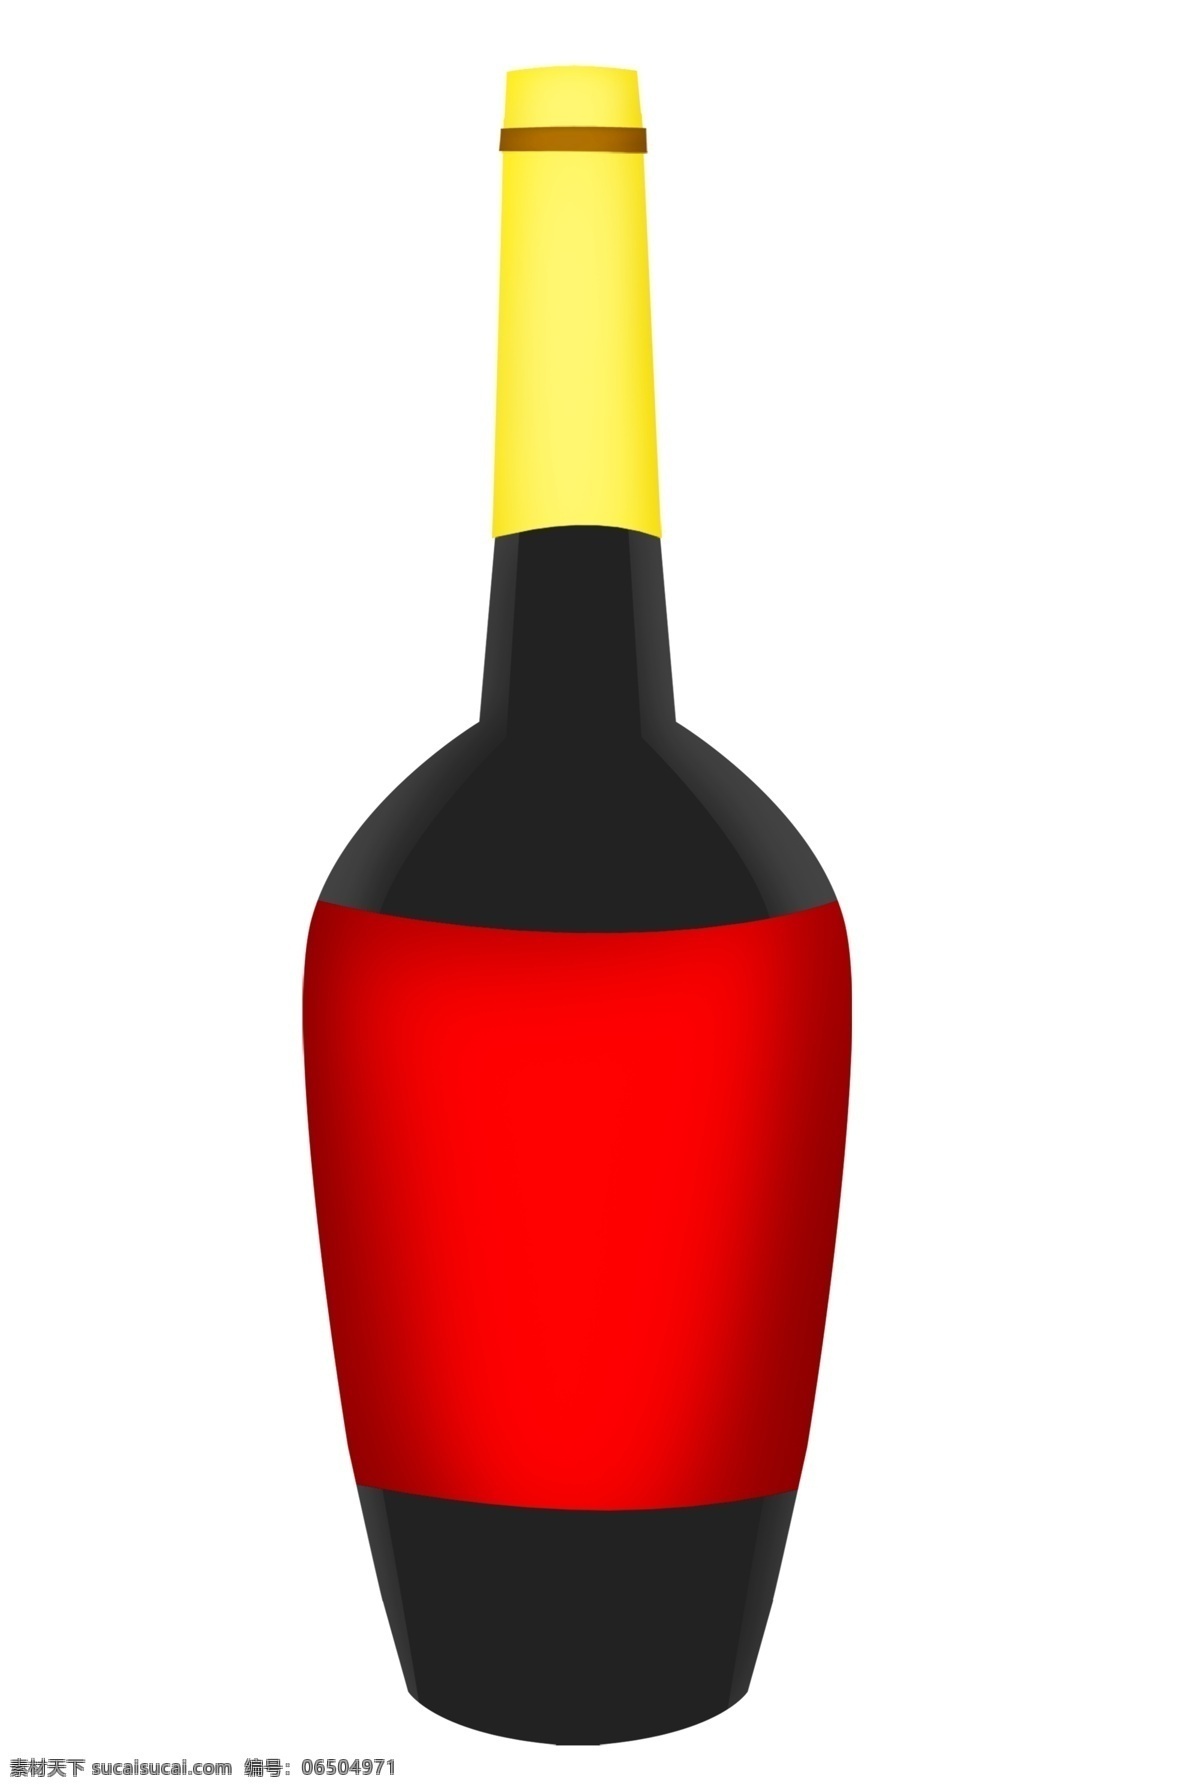 黑色 瓶子 红酒 插画 一瓶红酒 红色 黄色装饰 黑色红酒品 高档红酒 黑色瓶子 红酒插画 酒水